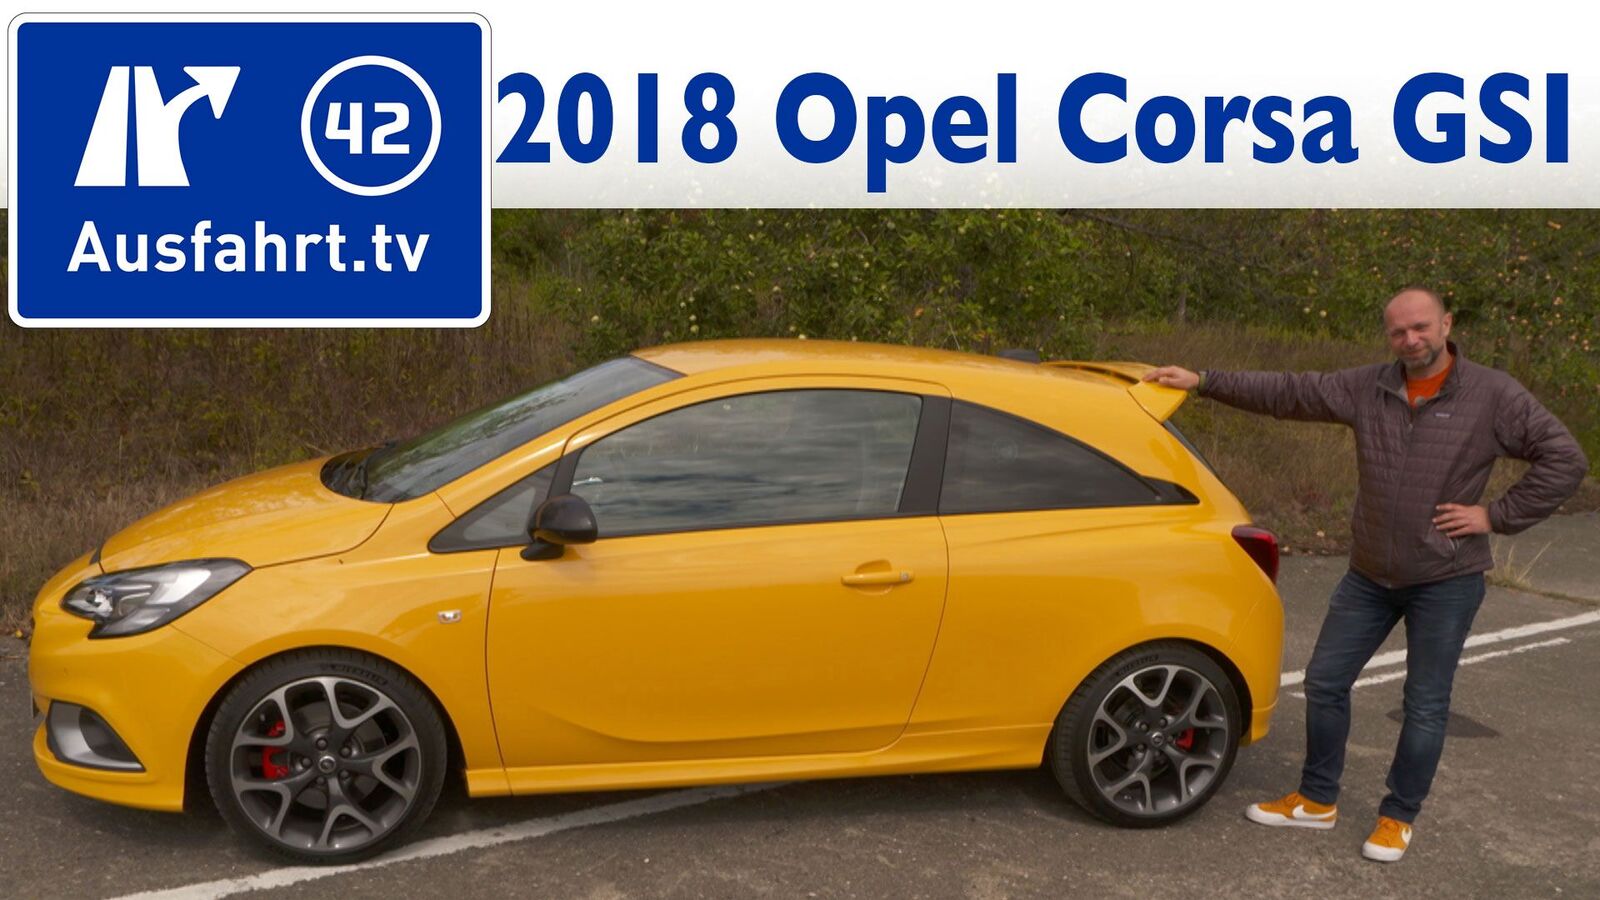 18 Opel Corsa Gsi 1 4 Turbo 150 Ps Ausfahrt Tv